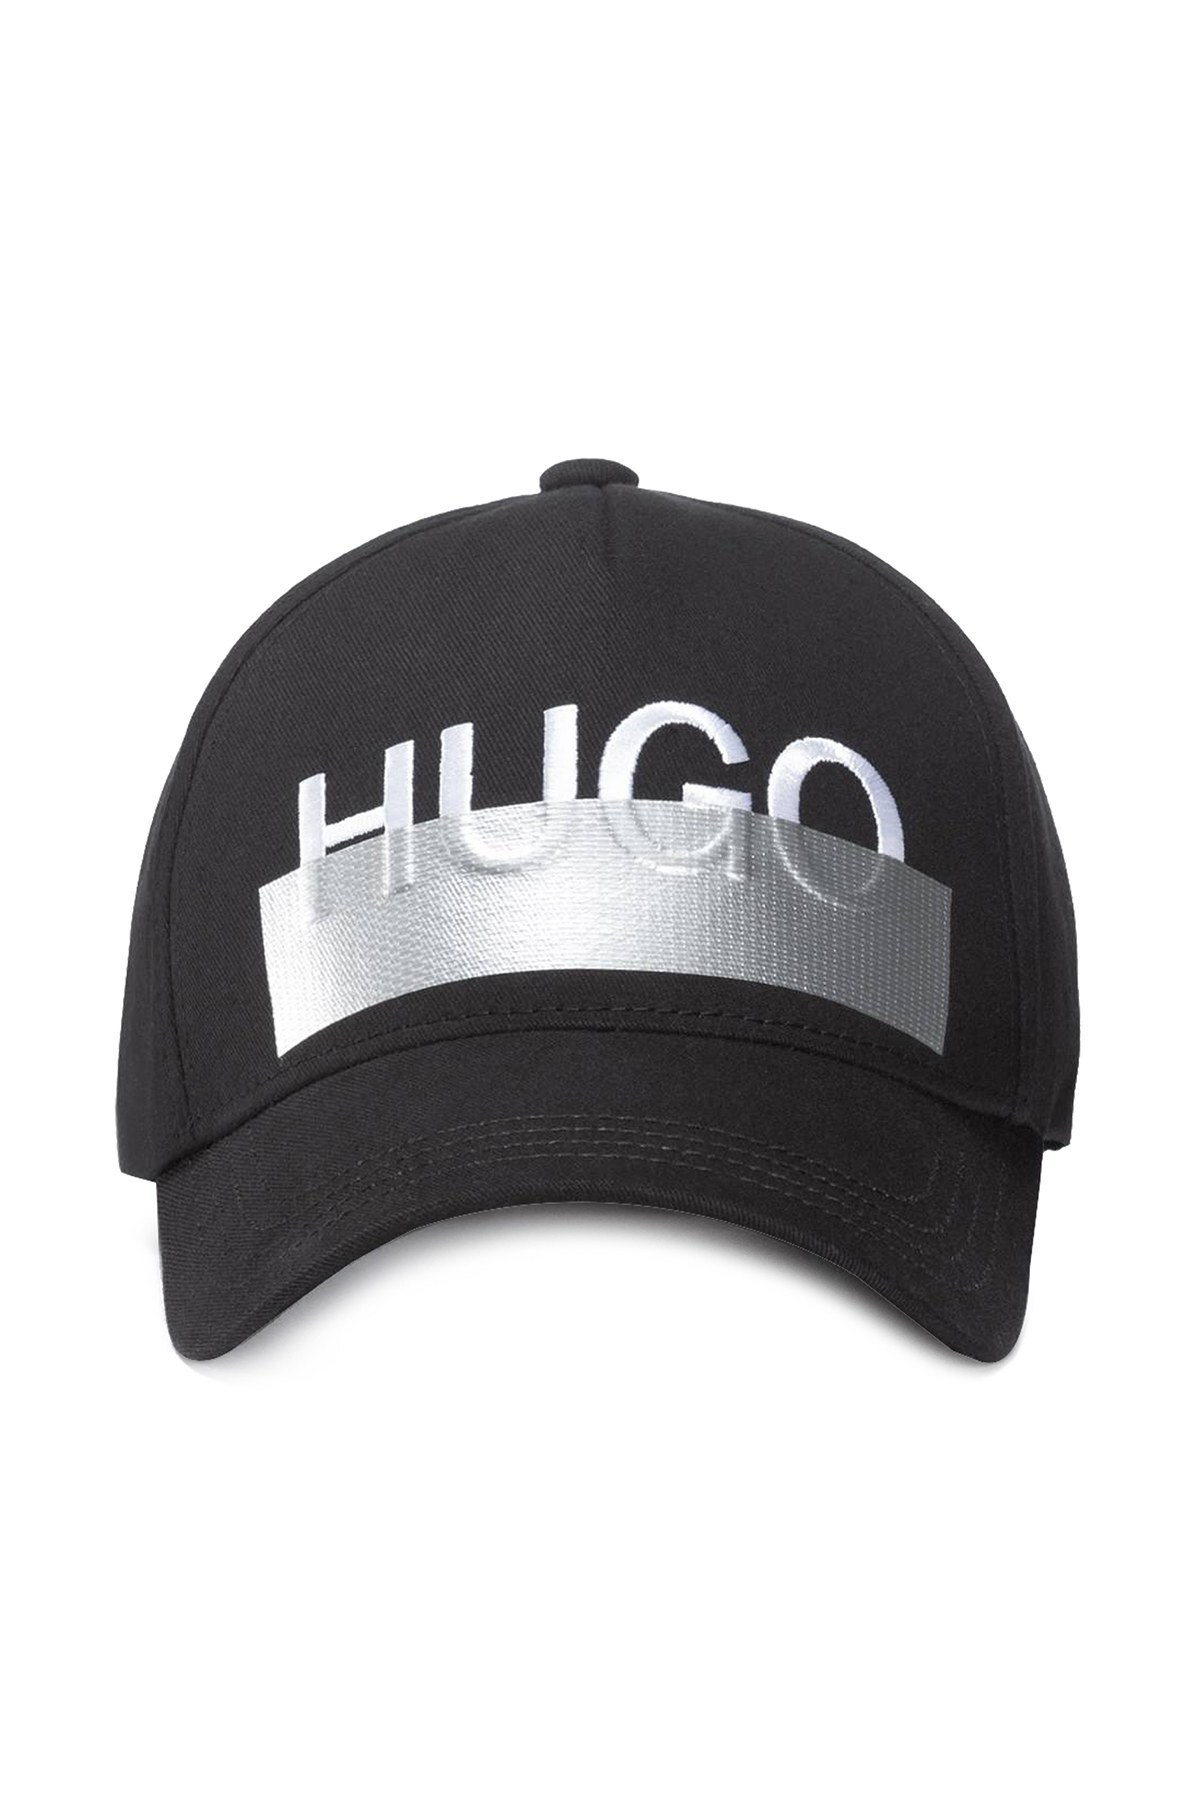 Hugo Boss Logo Baskılı % 100 Pamuk Erkek Şapka 50434892 001 SİYAH